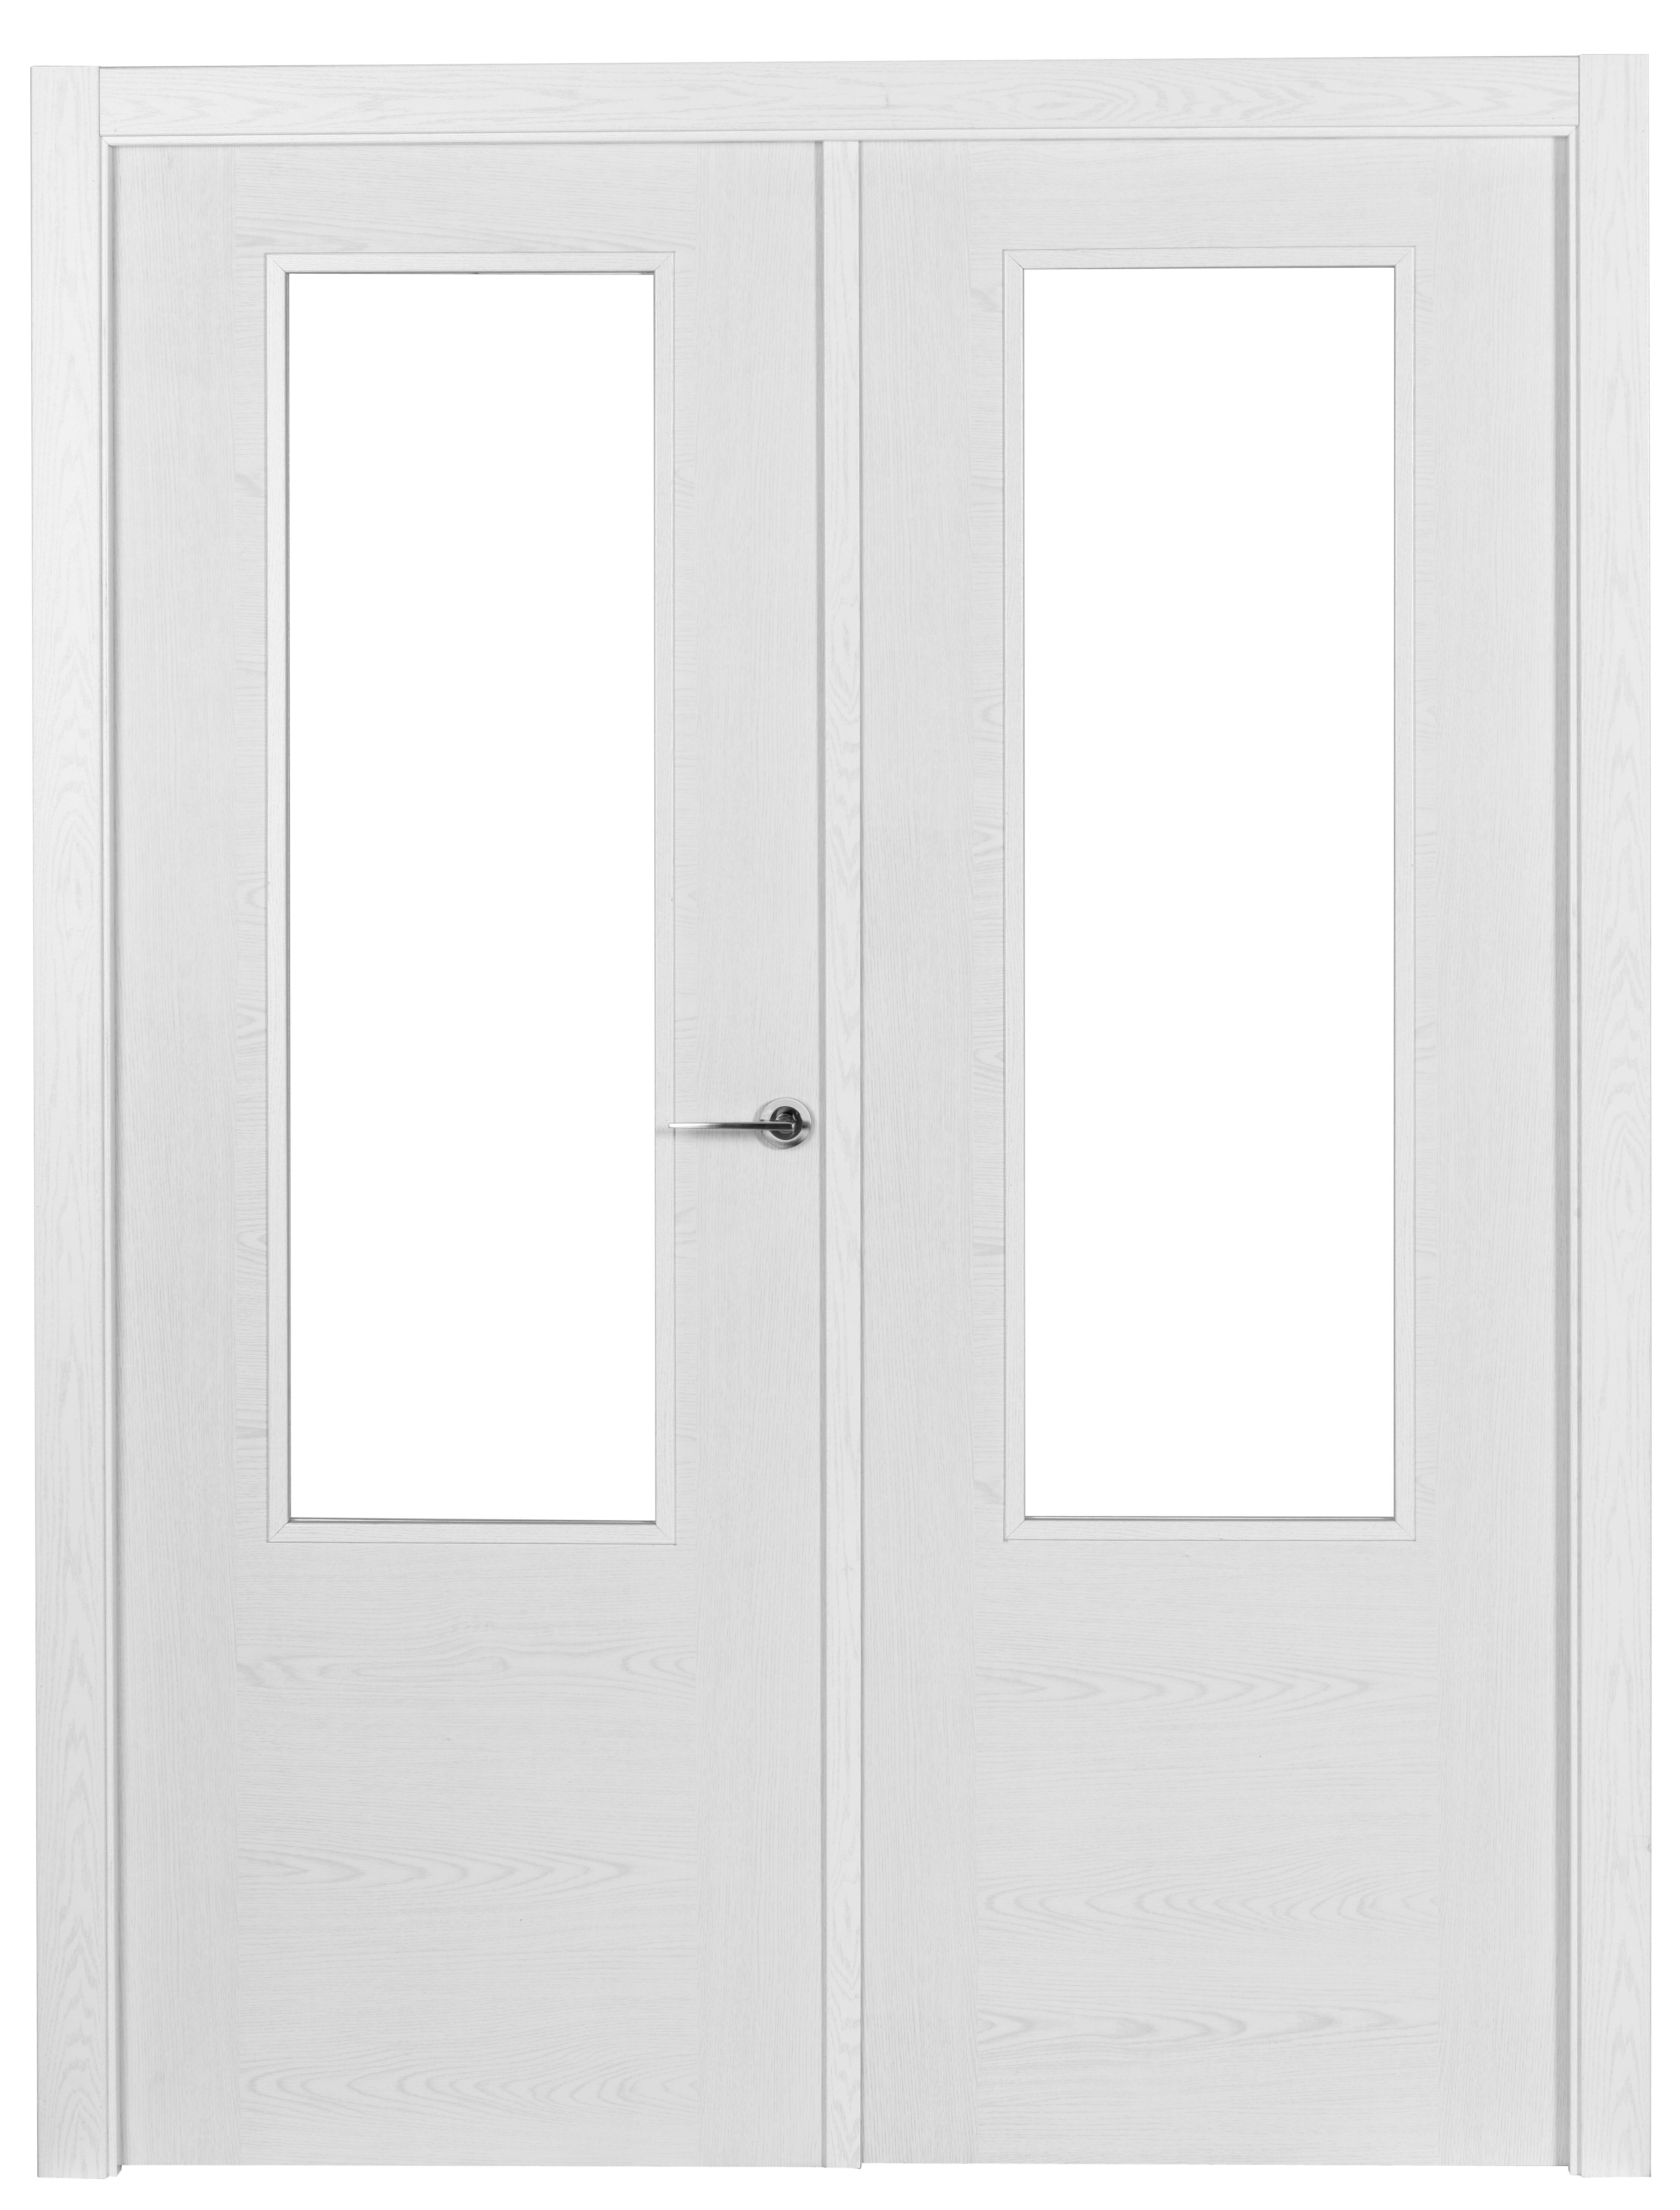 Puerta abatible canarias roble basic blanco izquierda con cristal 125cm (62+62)